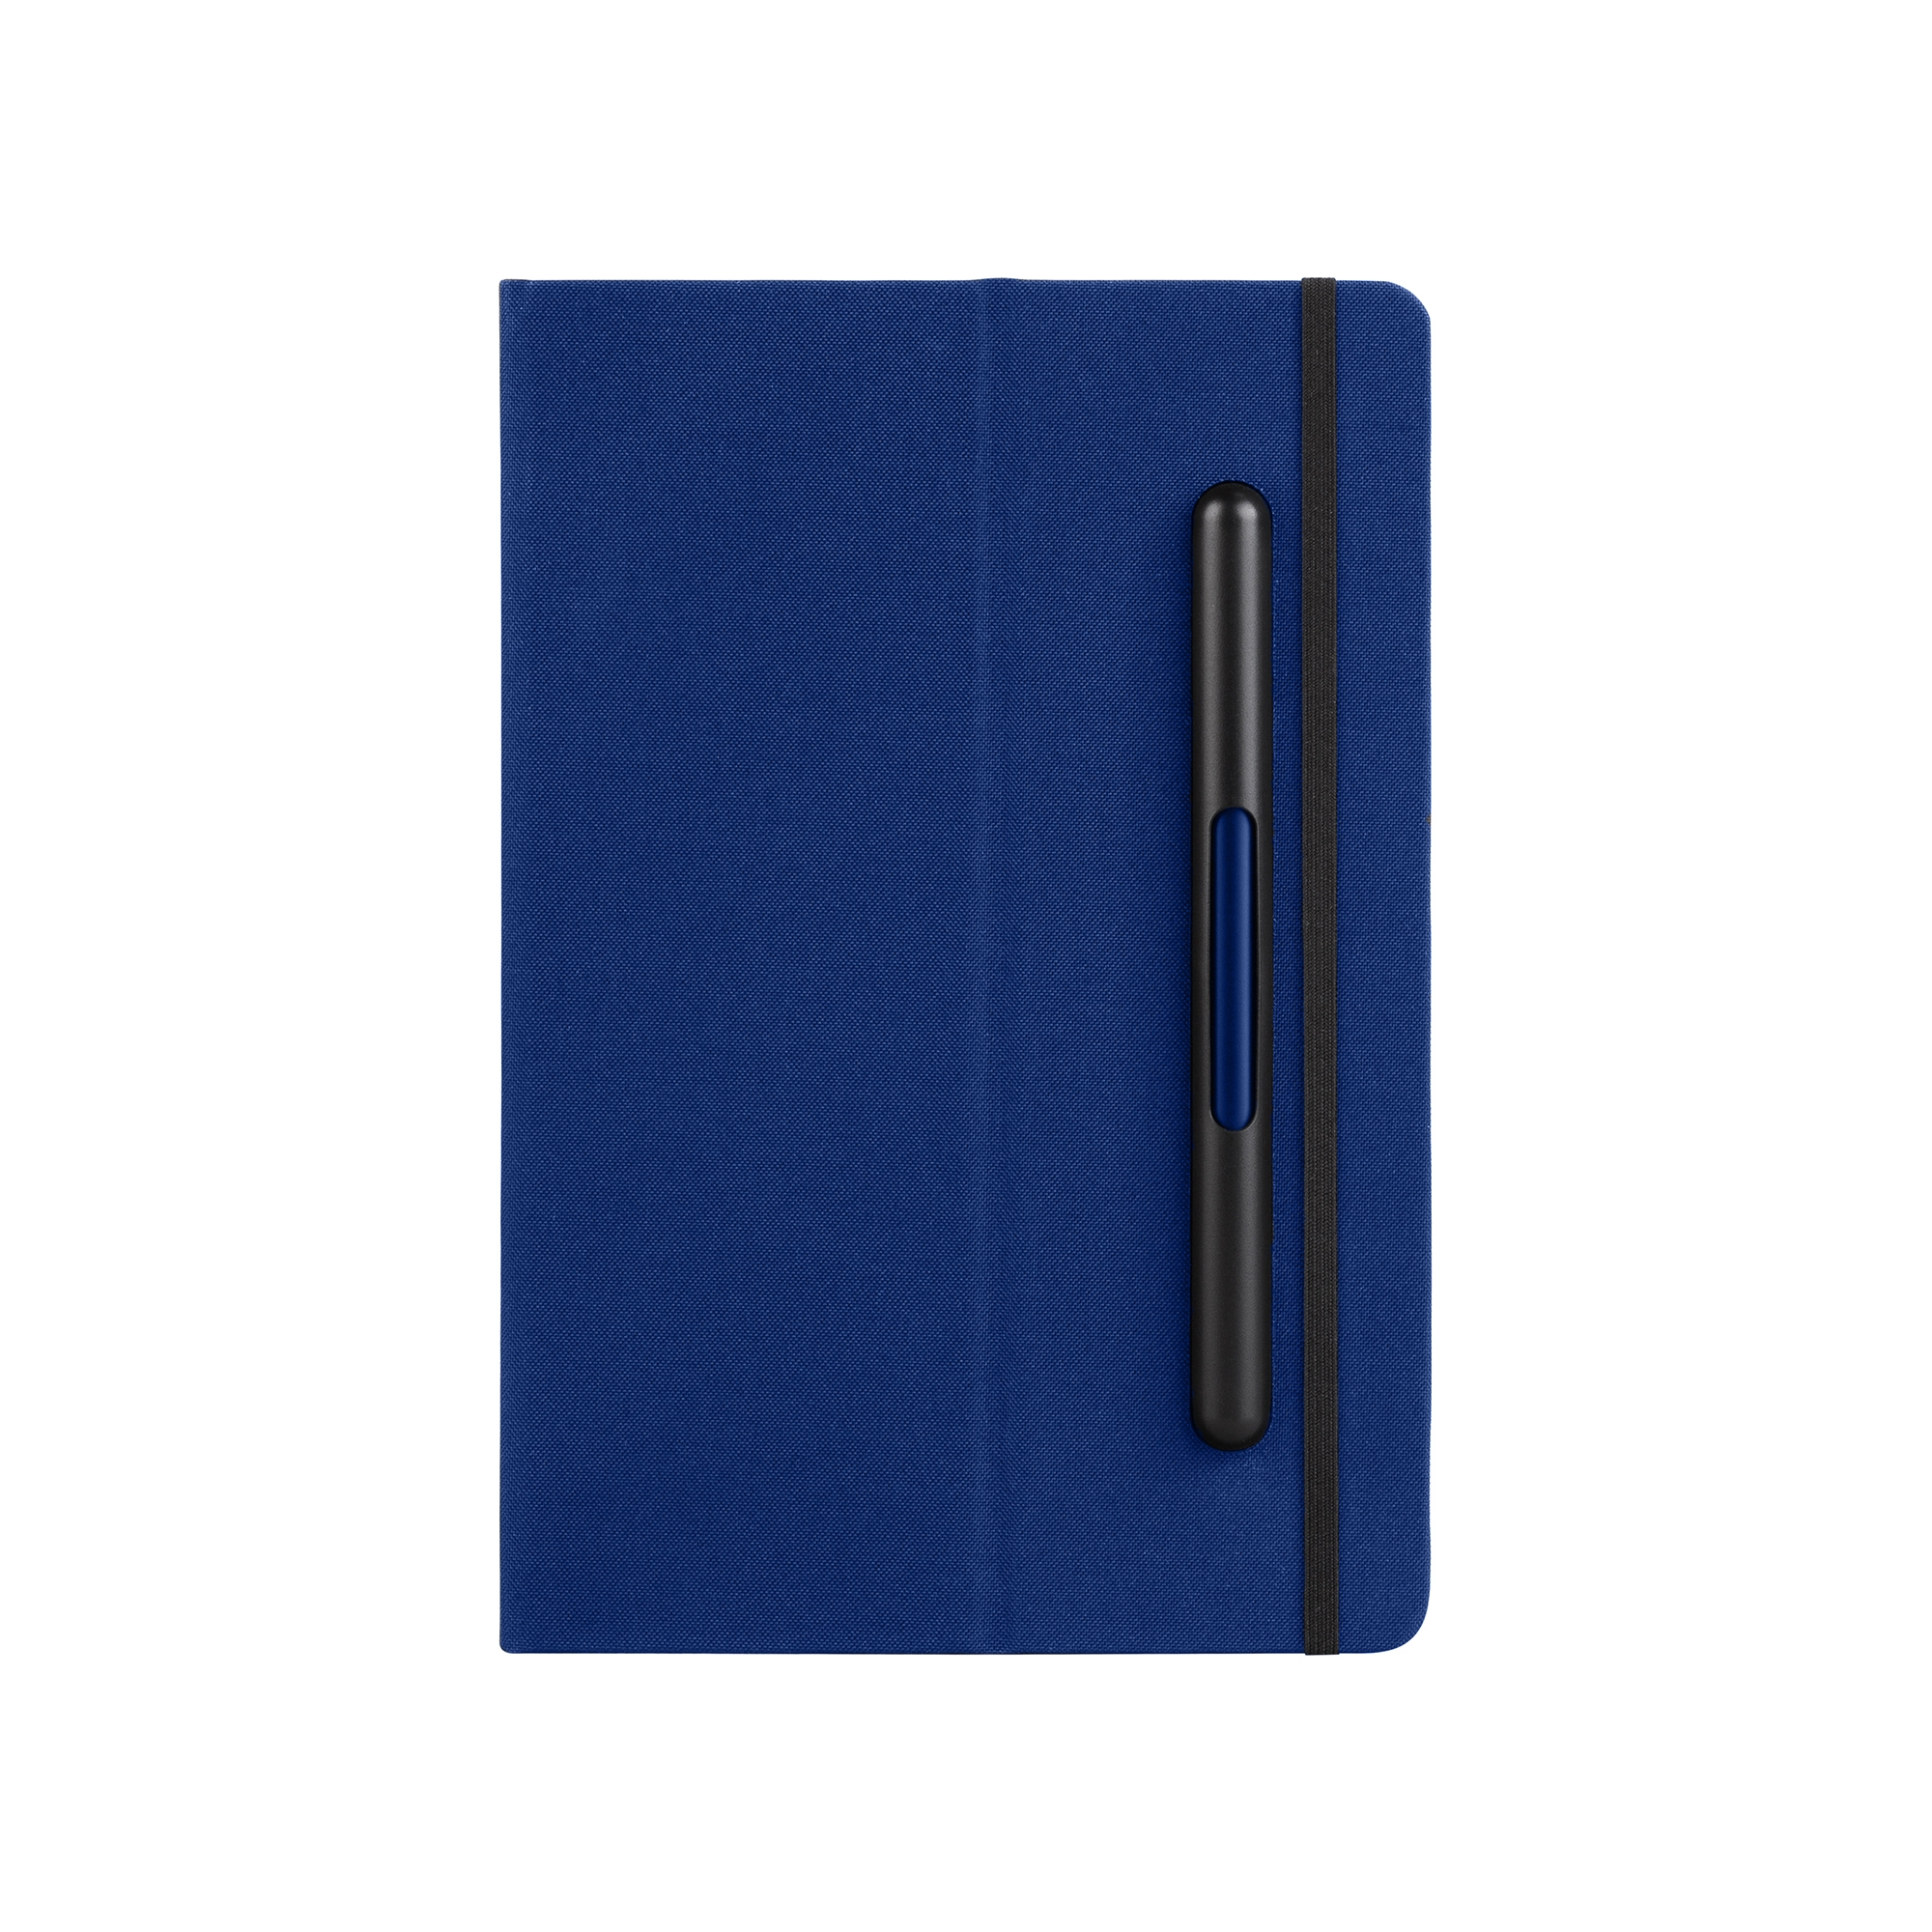 Блокнот с ручкой и вечным карандашом в пенале, с подставкой под смартфон, синий